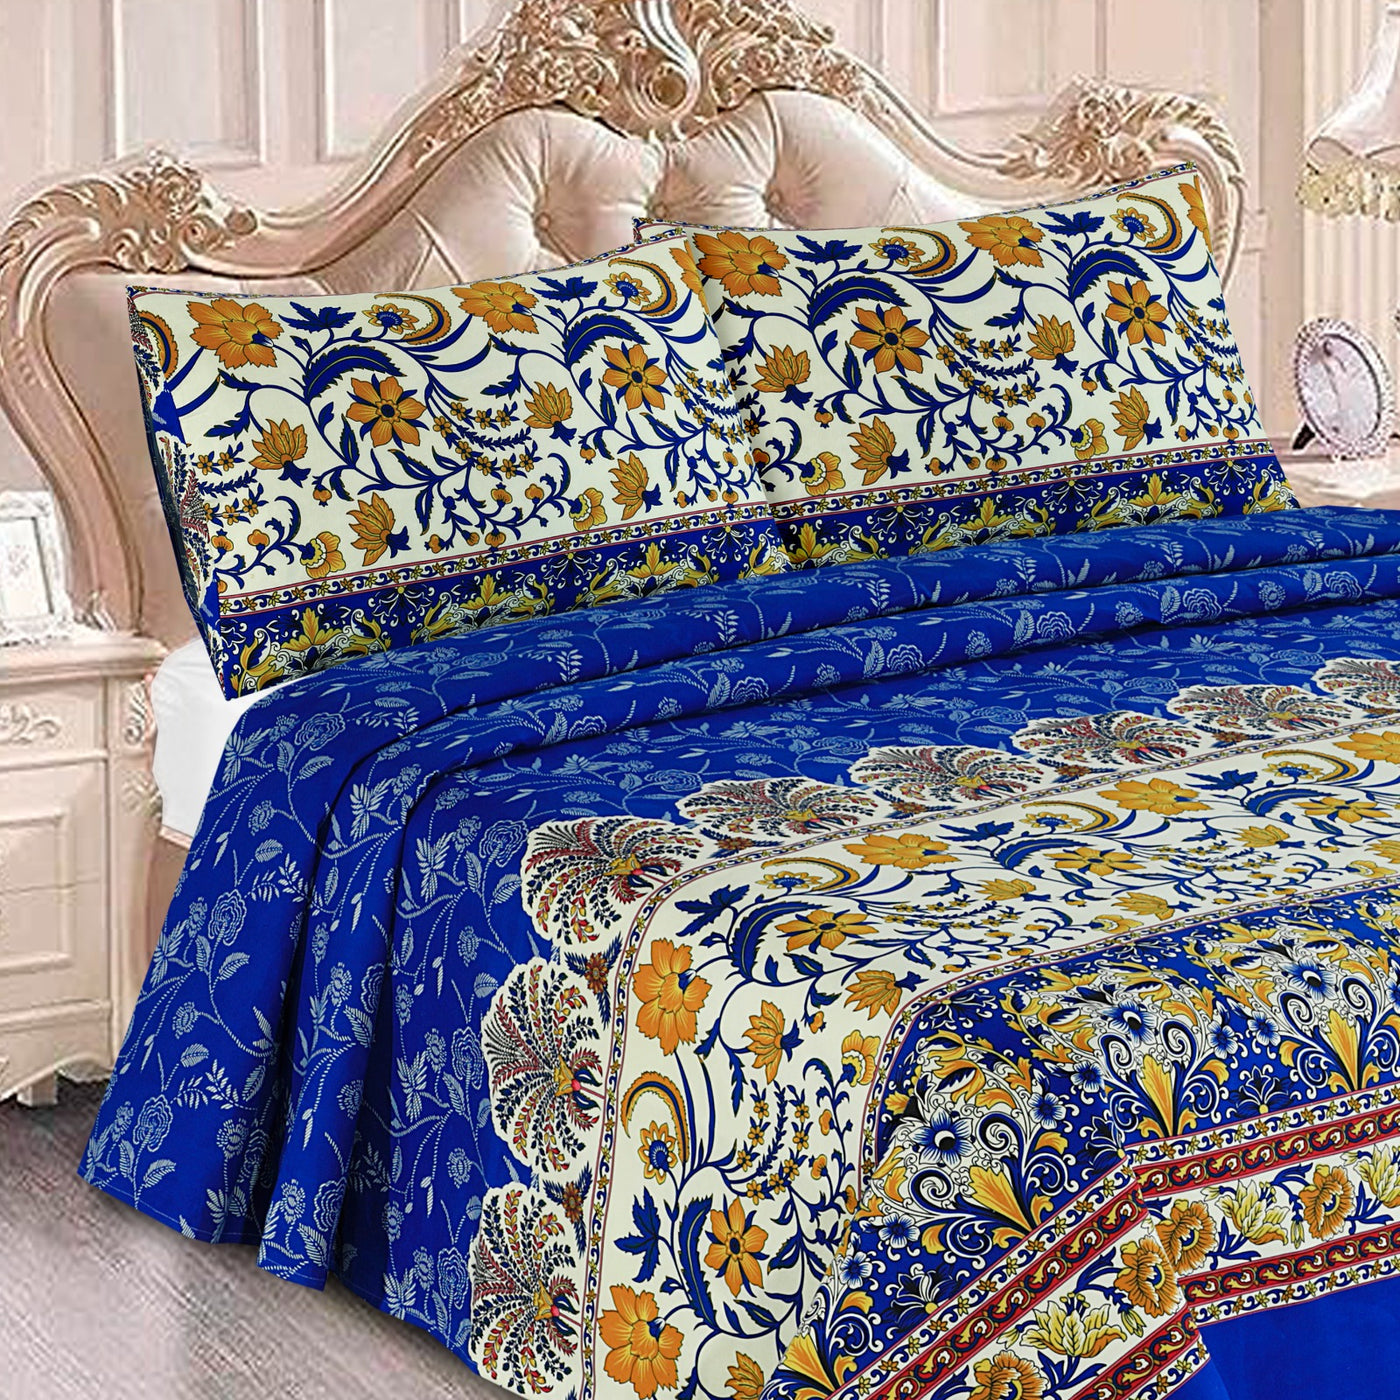 Oliver blue -Premium Cotton Bed Sheet Set